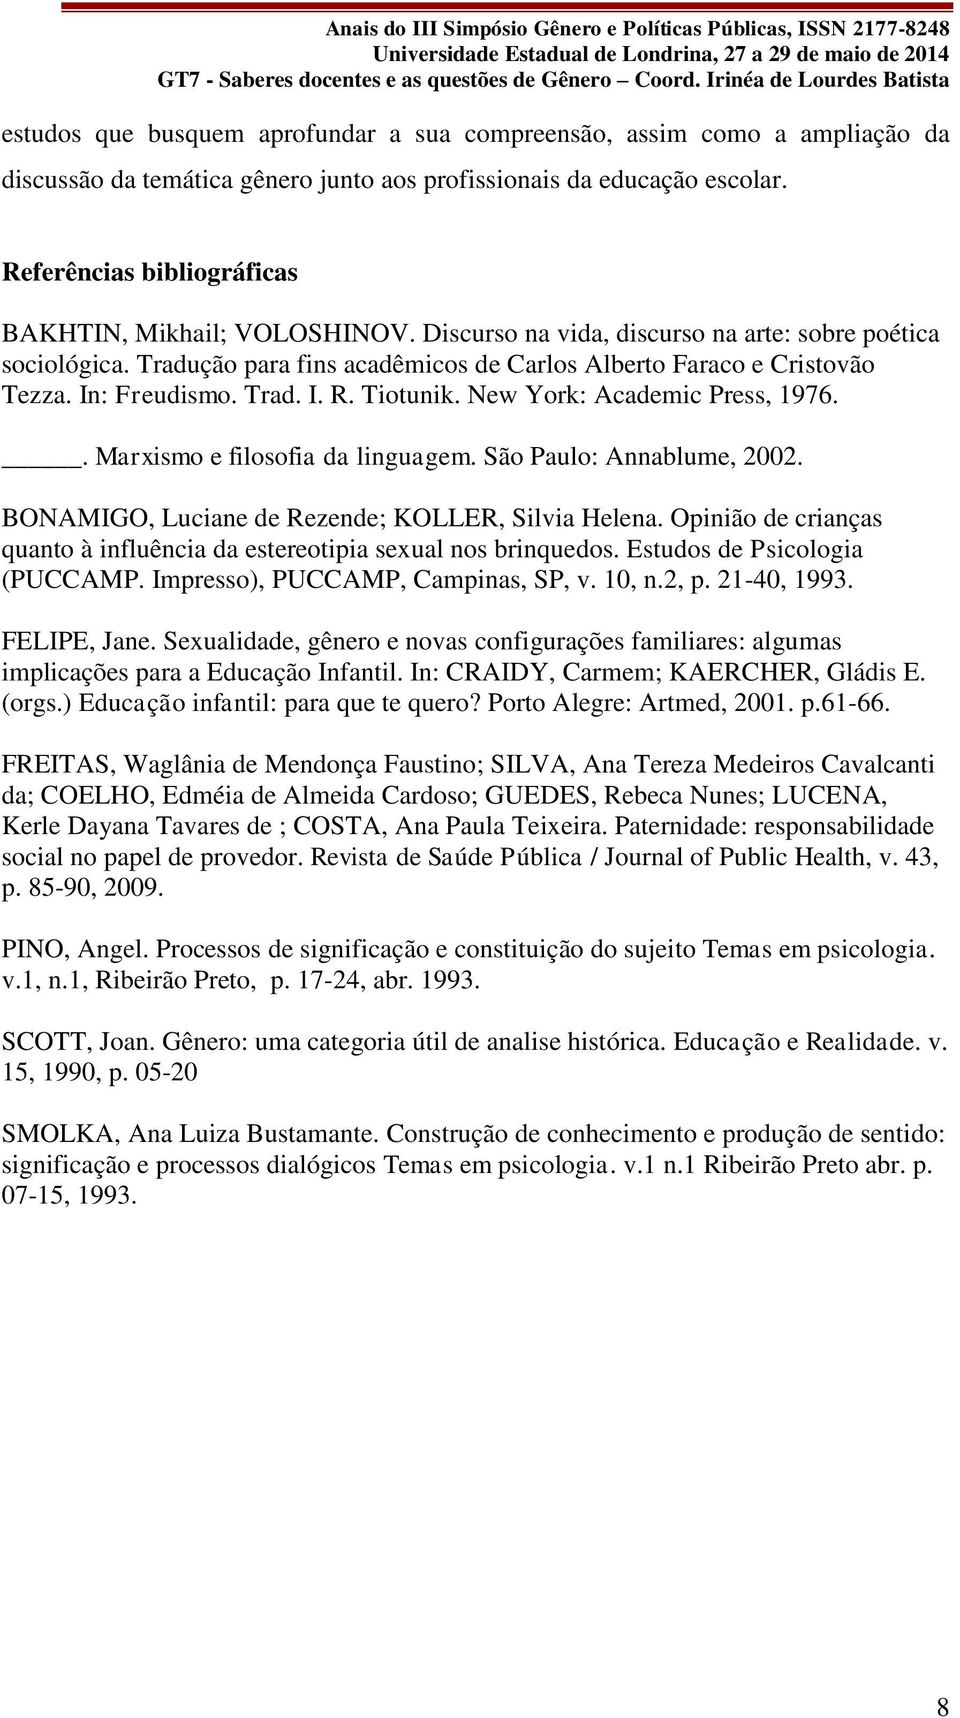 In: Freudismo. Trad. I. R. Tiotunik. New York: Academic Press, 1976.. Marxismo e filosofia da linguagem. São Paulo: Annablume, 2002. BONAMIGO, Luciane de Rezende; KOLLER, Silvia Helena.